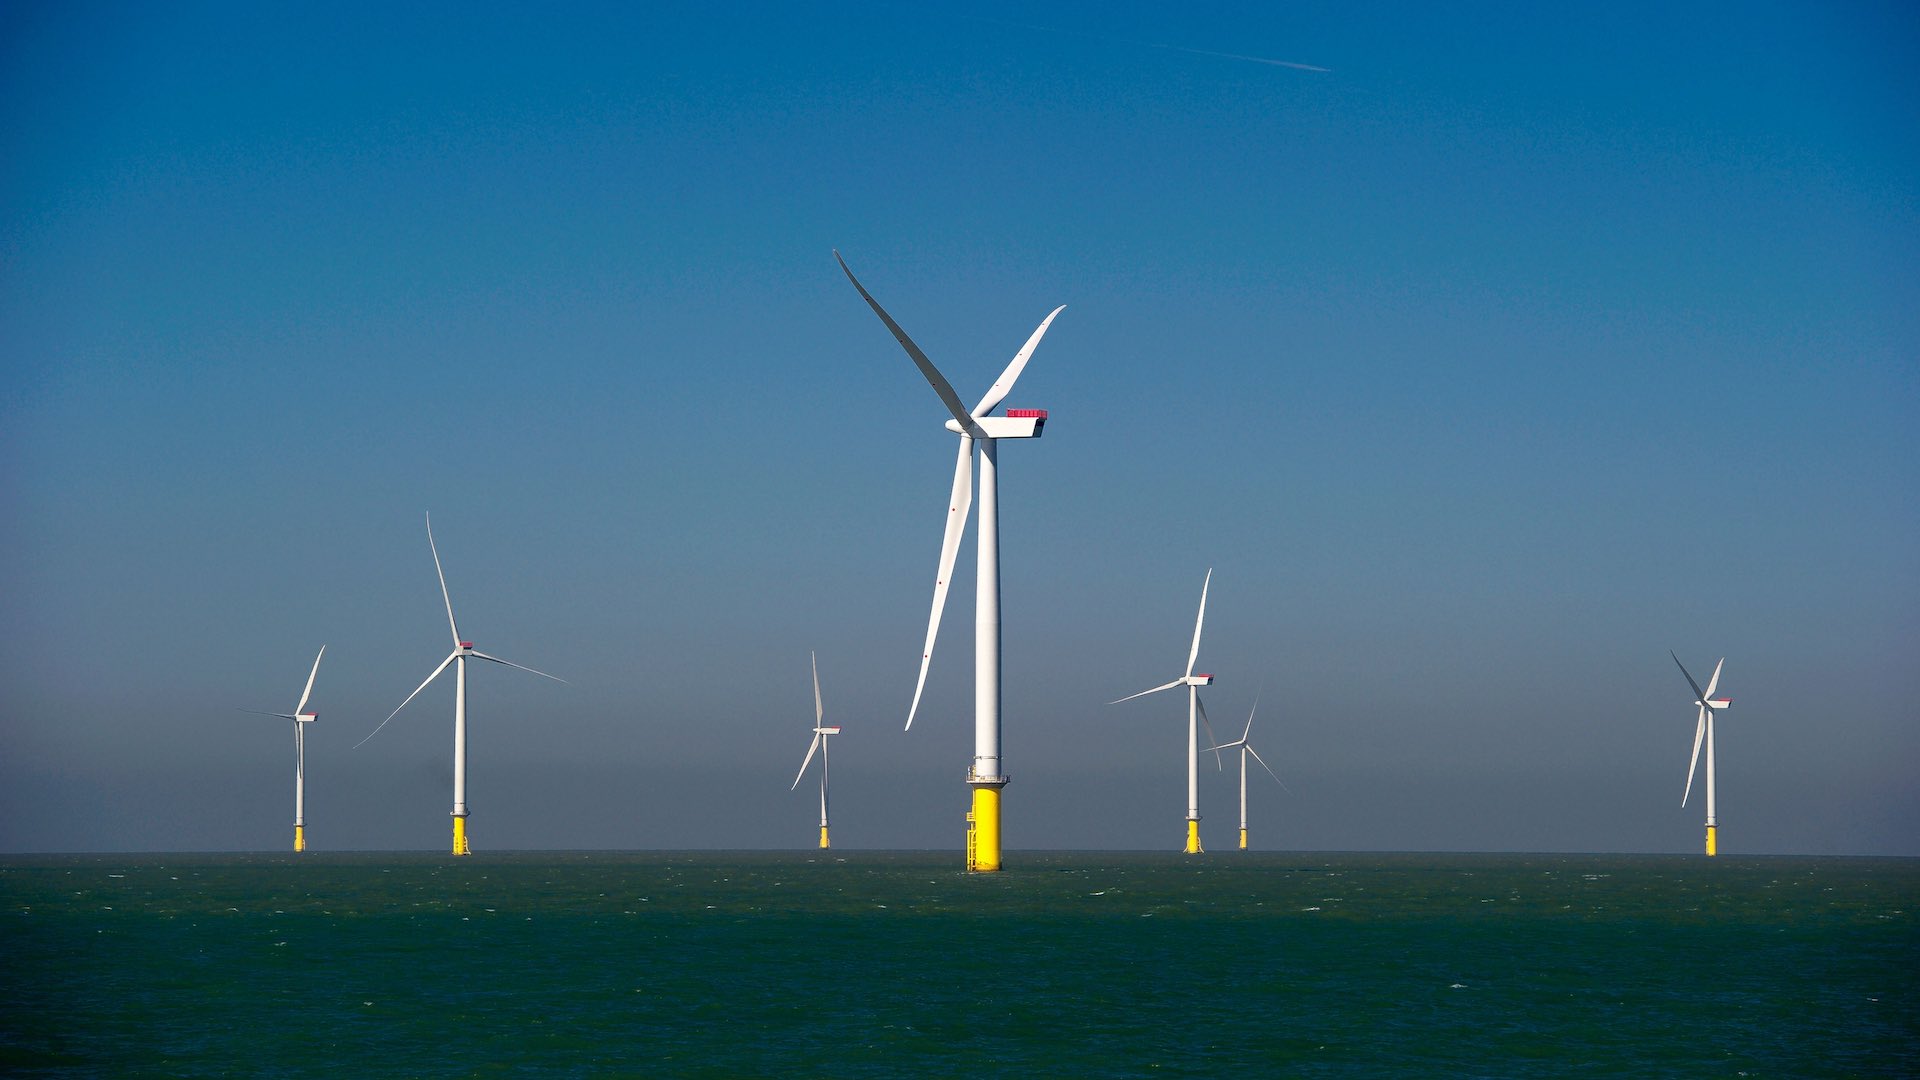 阿联酋马斯达尔向英国海上风电场投资 11B 英镑